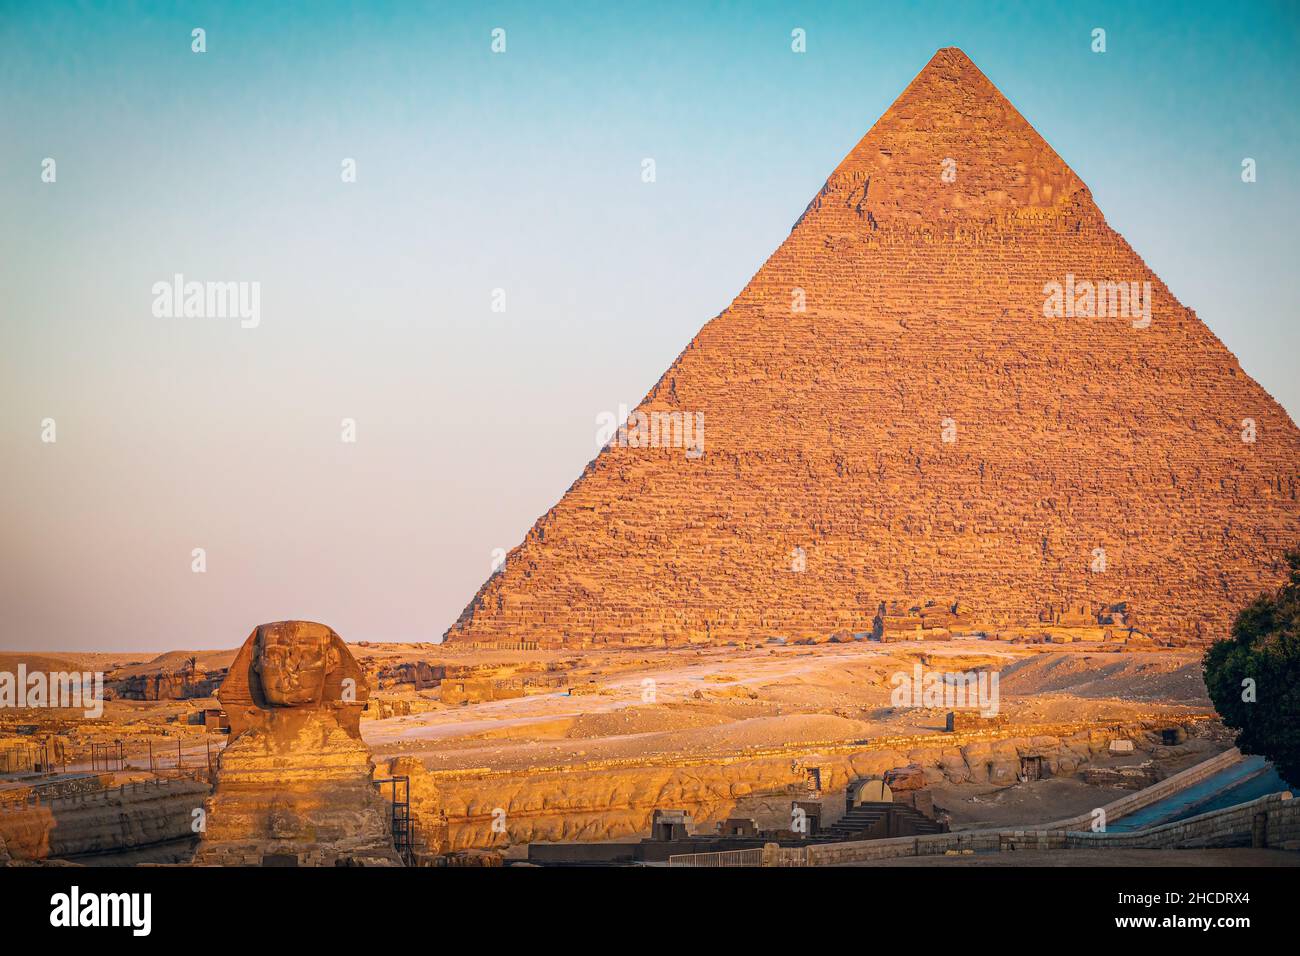 La grande pyramide de Gizeh et le Sphinx vu à l'heure d'or du lever du soleil.Photo prise le 21st juin 2021, sur le plateau de Gizeh, le Caire, Égypte. Banque D'Images